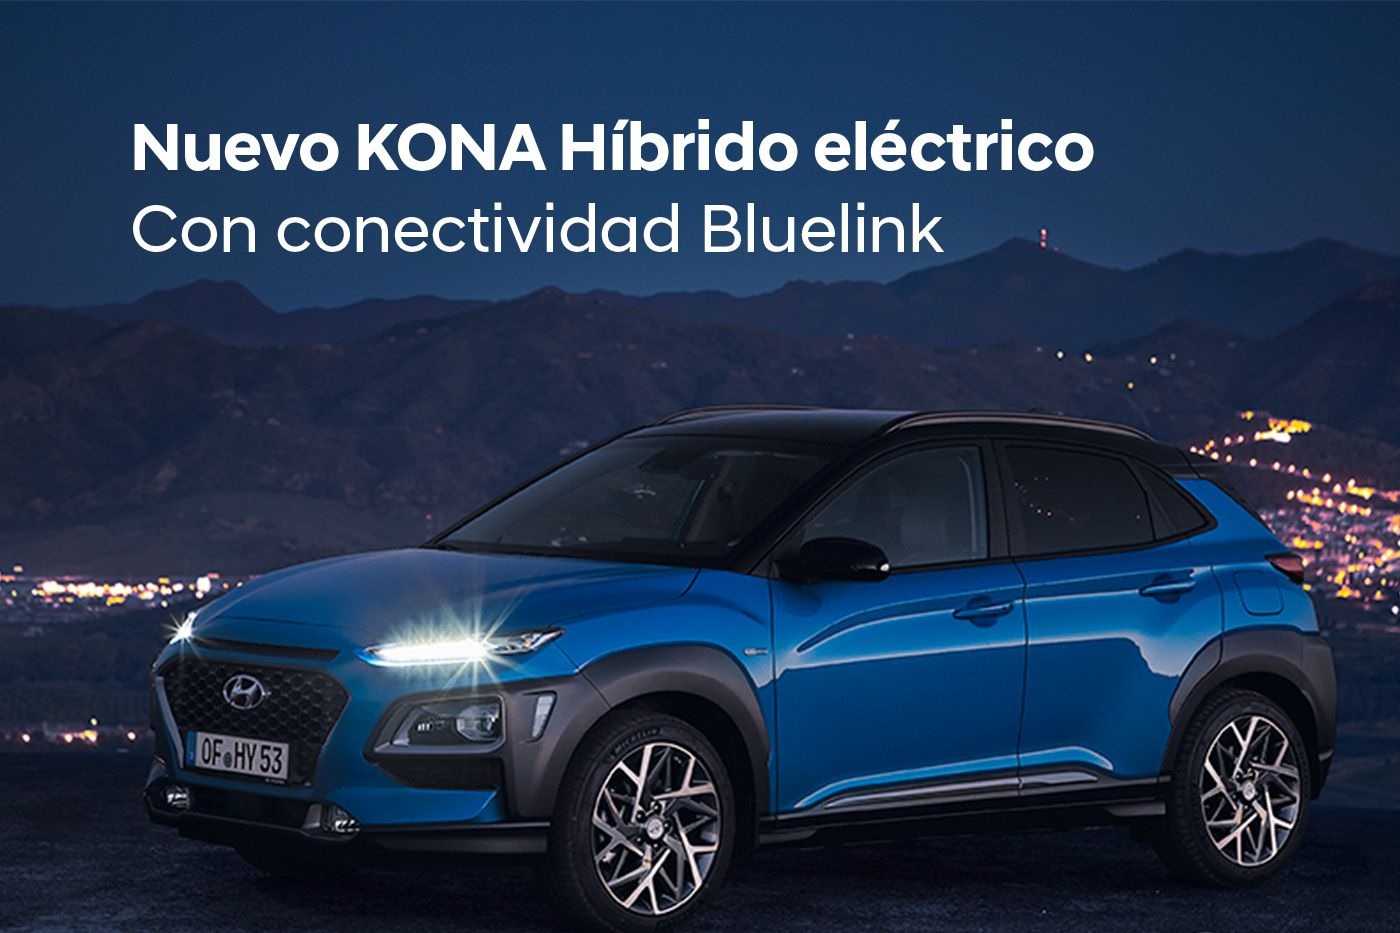 El nuevo Hyundai Kona Híbrido eléctrico llega a Guadalete Motor